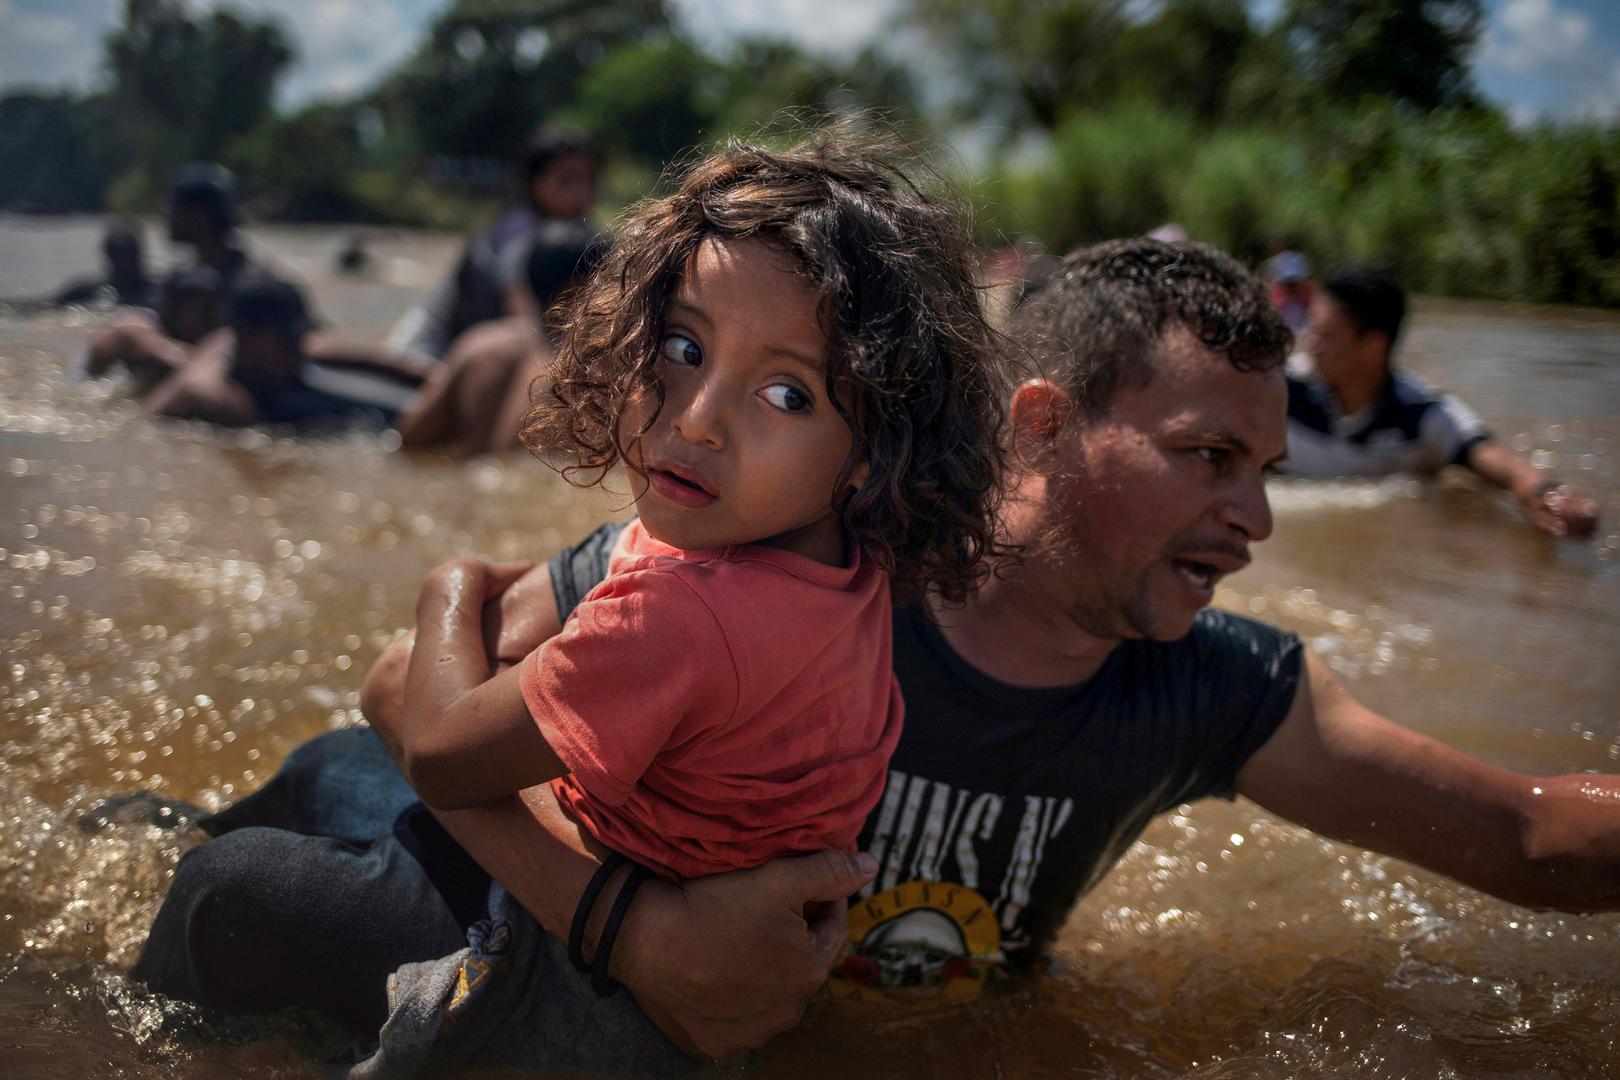 Za potresnu seriju fotografija migranata u Srednjoj Americi koji moraju proći kroz pravi pakao Reutersovi su fotoreporteri 2019. dobili Pulitzera